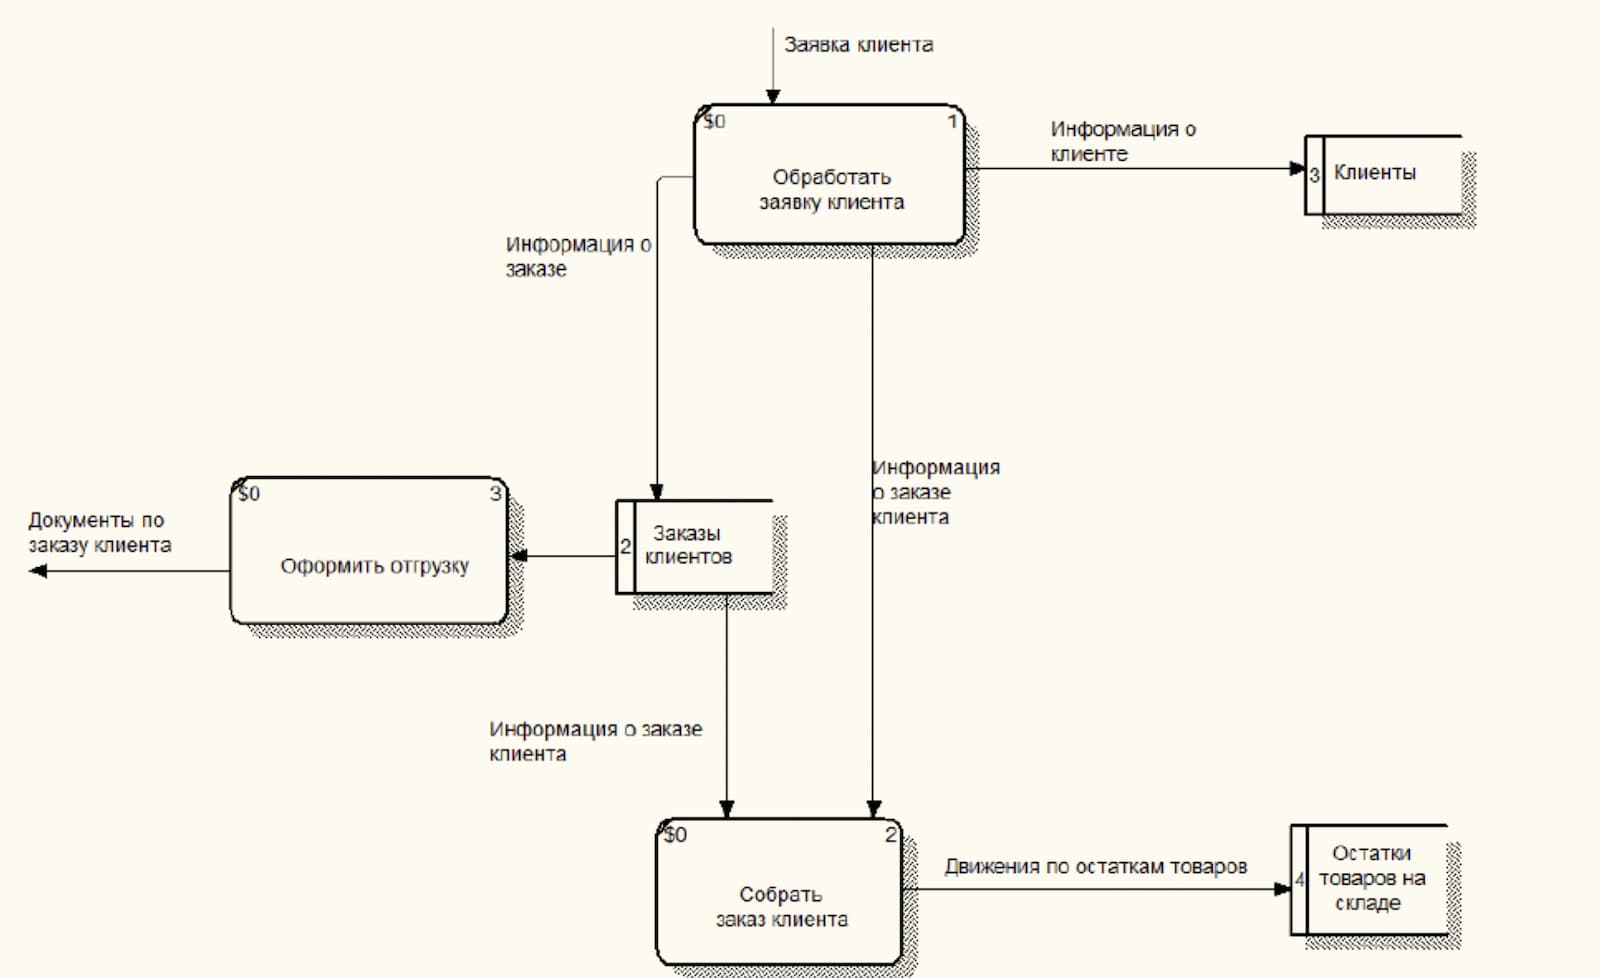 Пример описания процесса обработки заказа клиента с помощью методологии DFD